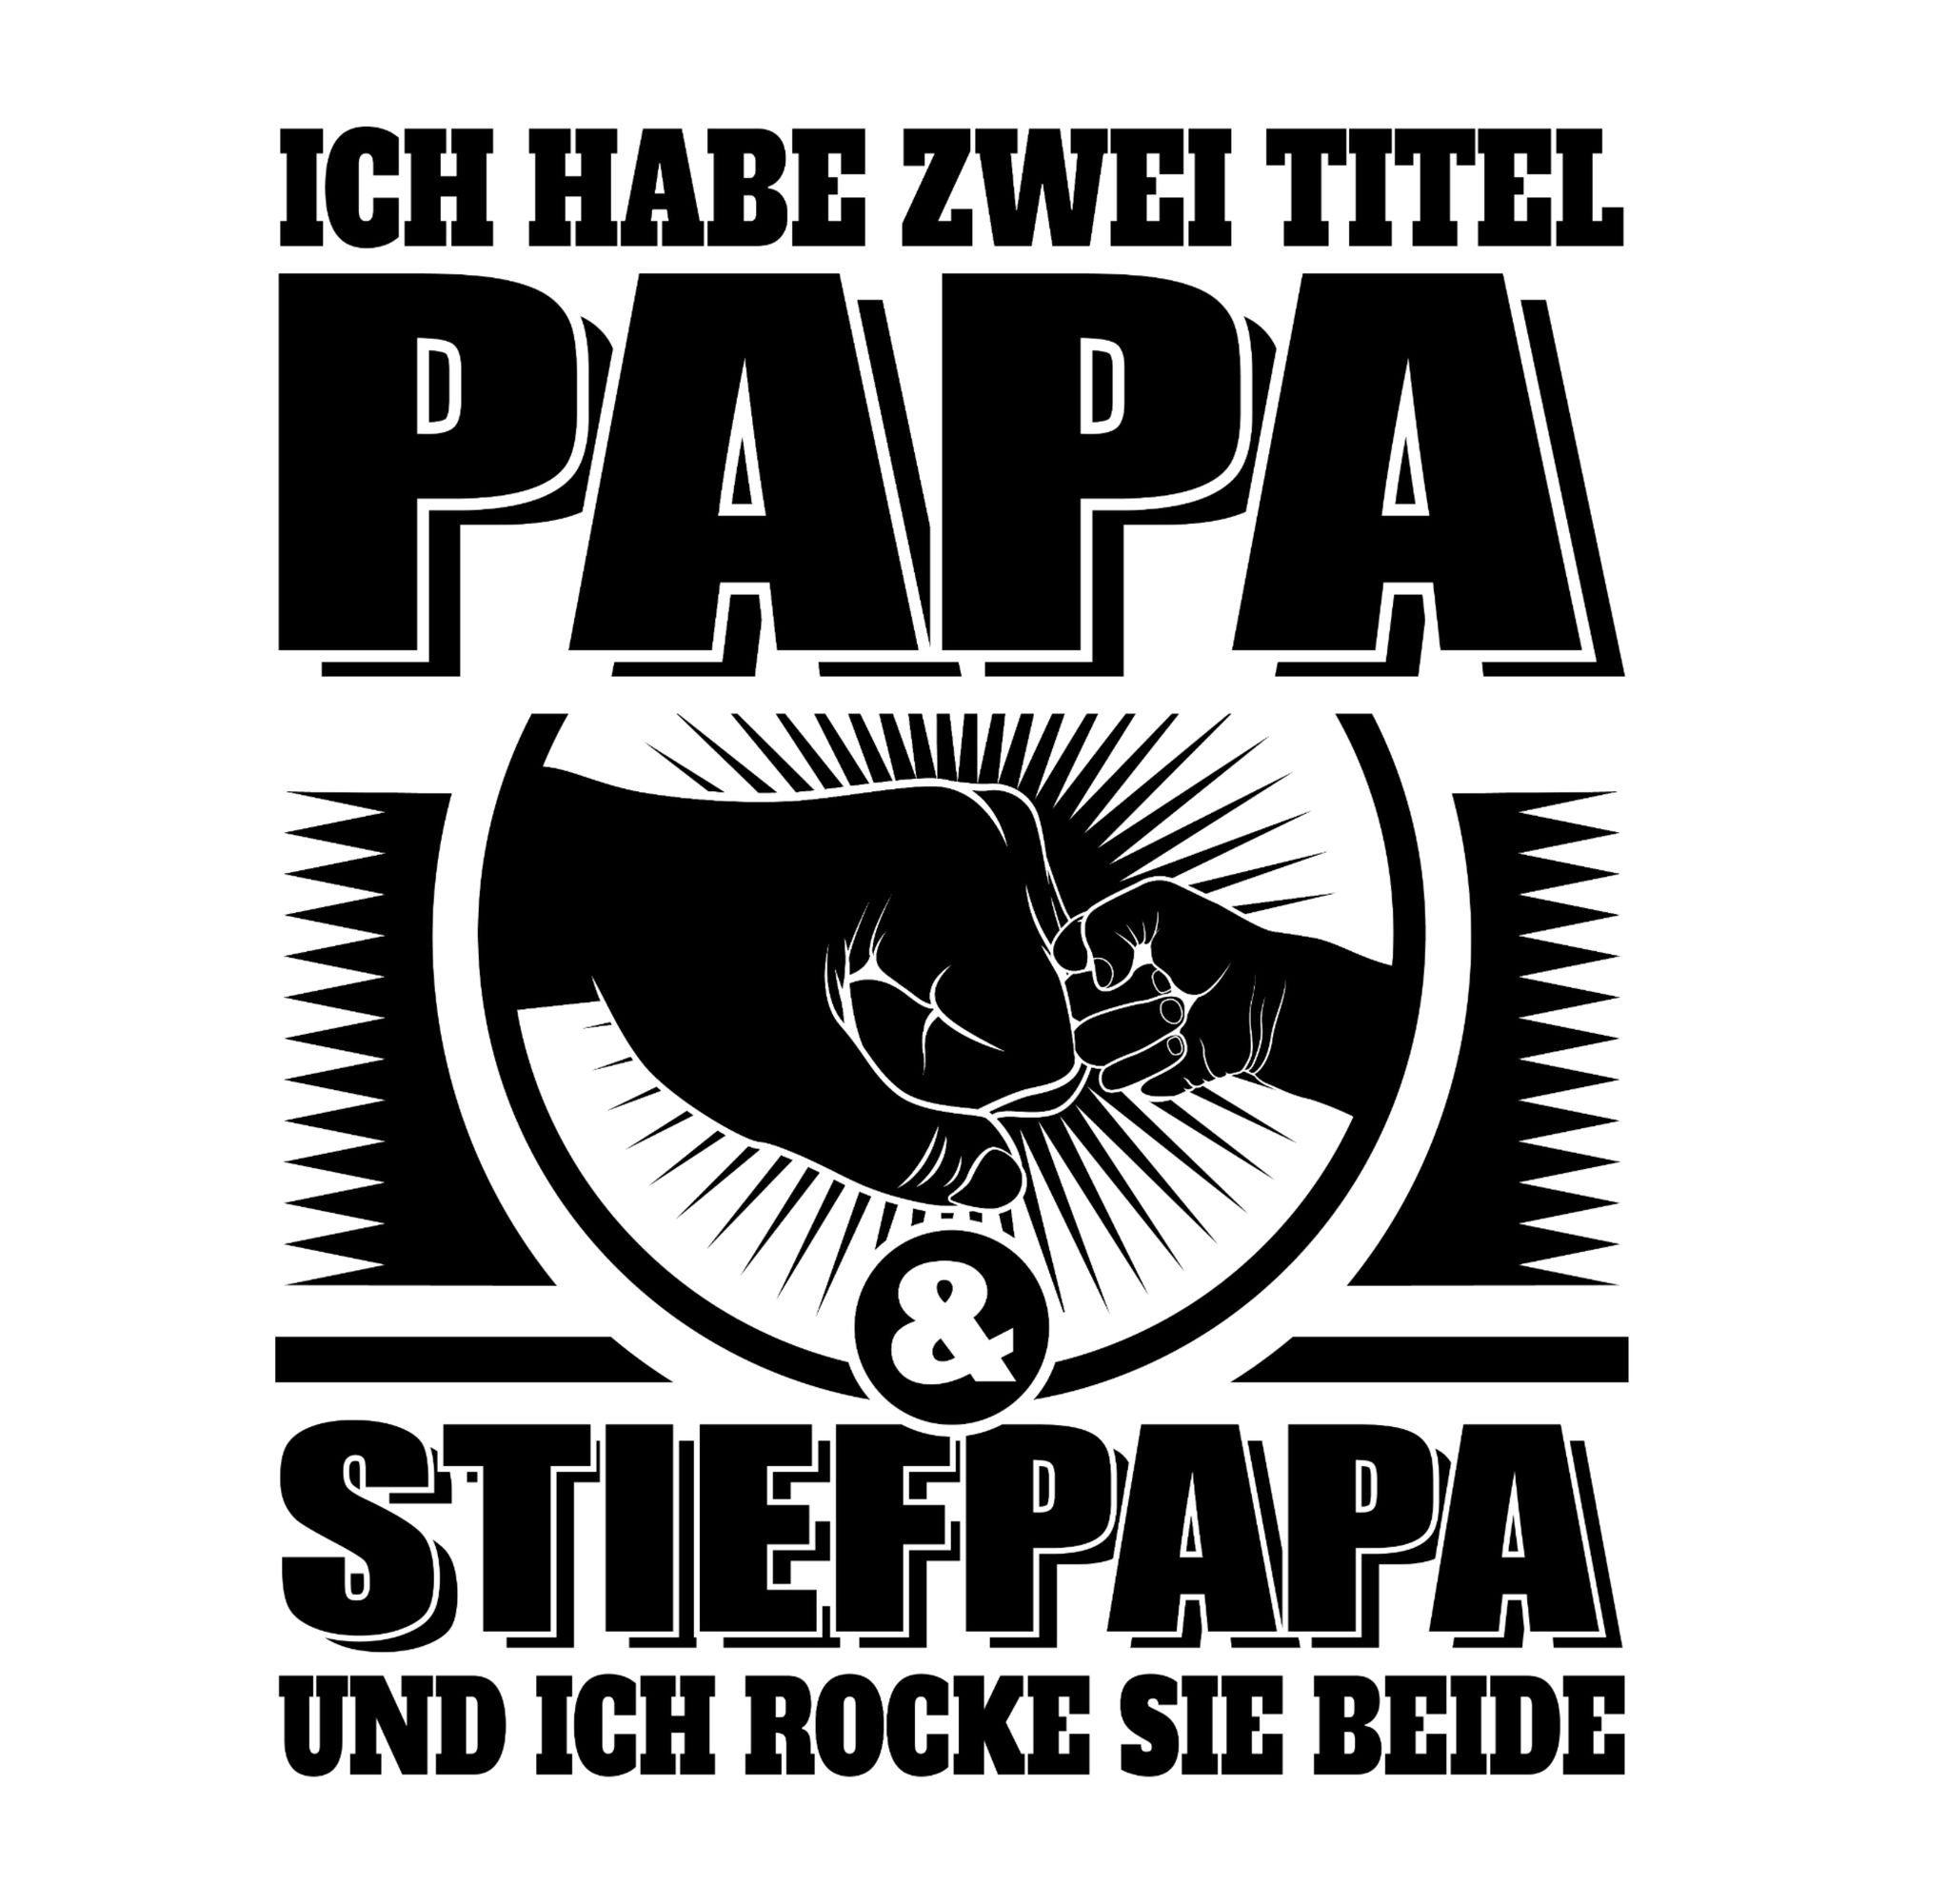 Shirtracer T-Shirt Ich habe 01 beide für Titel und Geschenk sie Vatertag zwei rocke sch ich Stiefpapa Papa Dunkelgrau - Papa - und